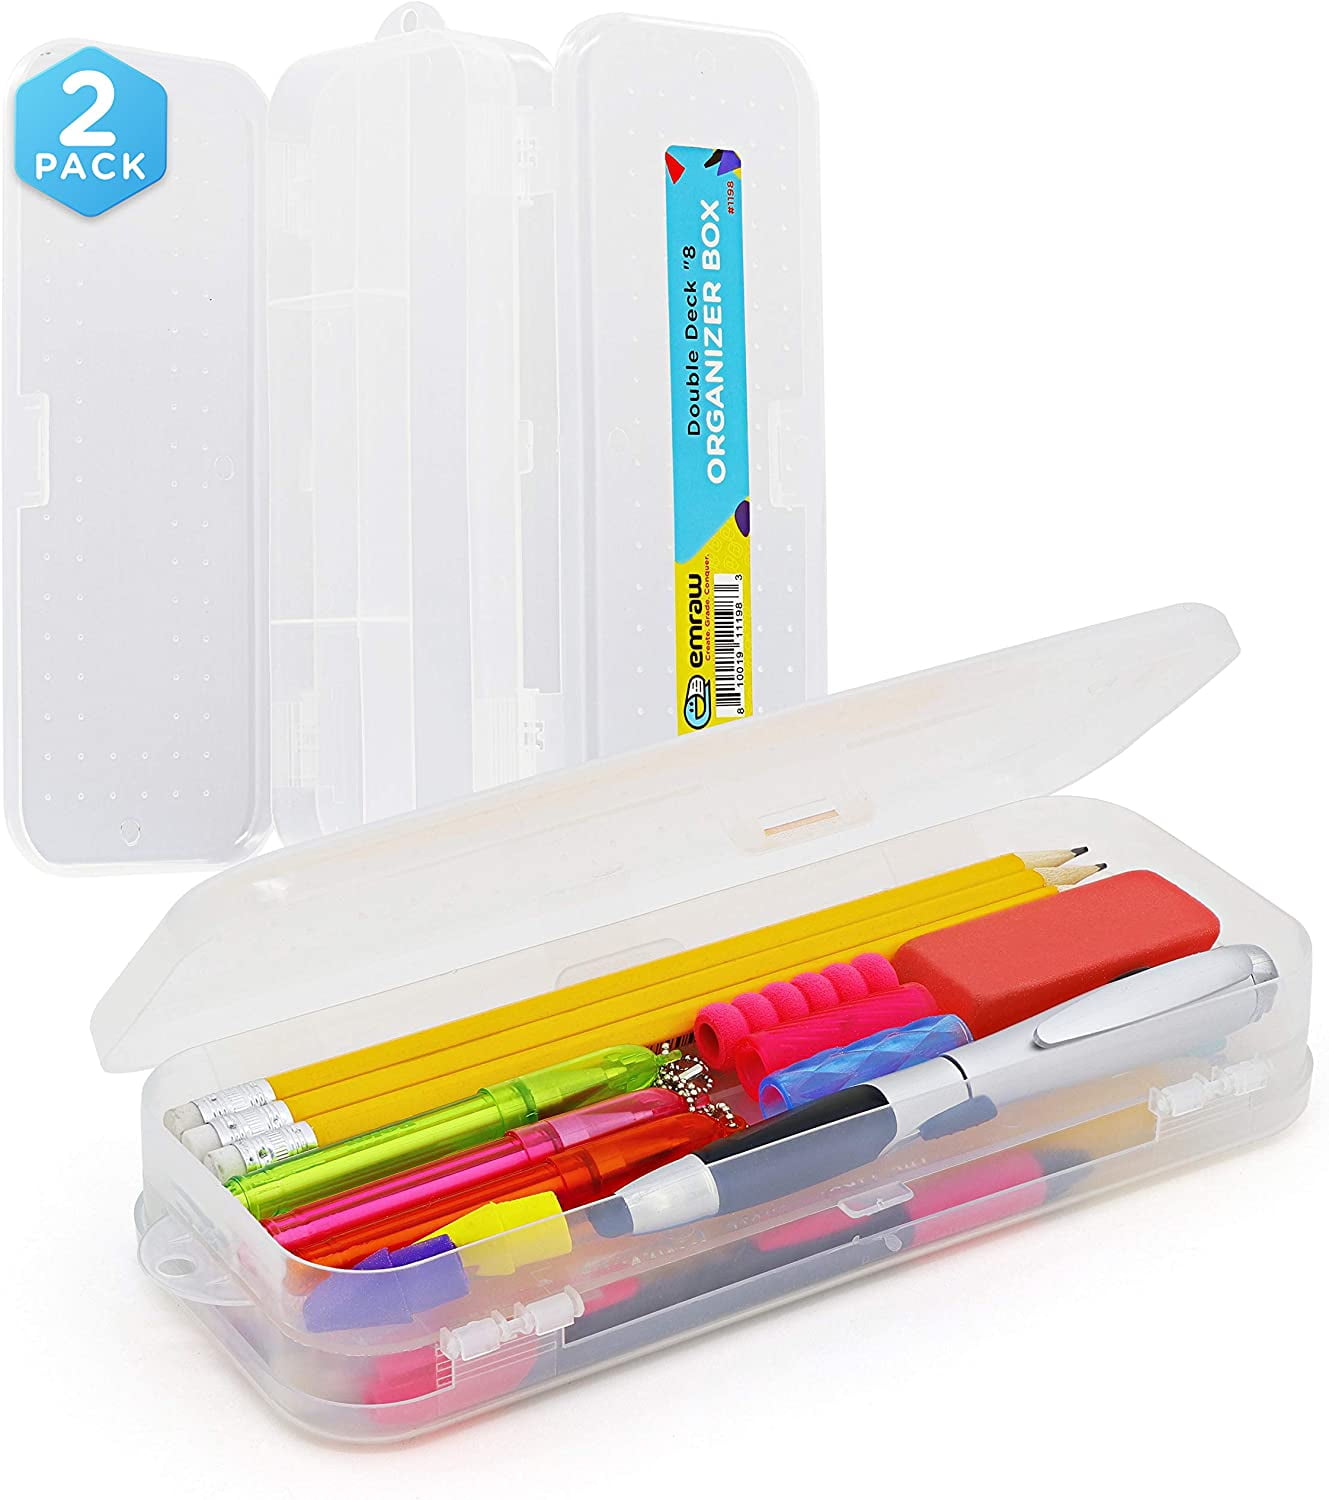 Slider Pencil Case School Plastic Pen Organizer Box YOU PICK COLOR FREE SHIPPING 